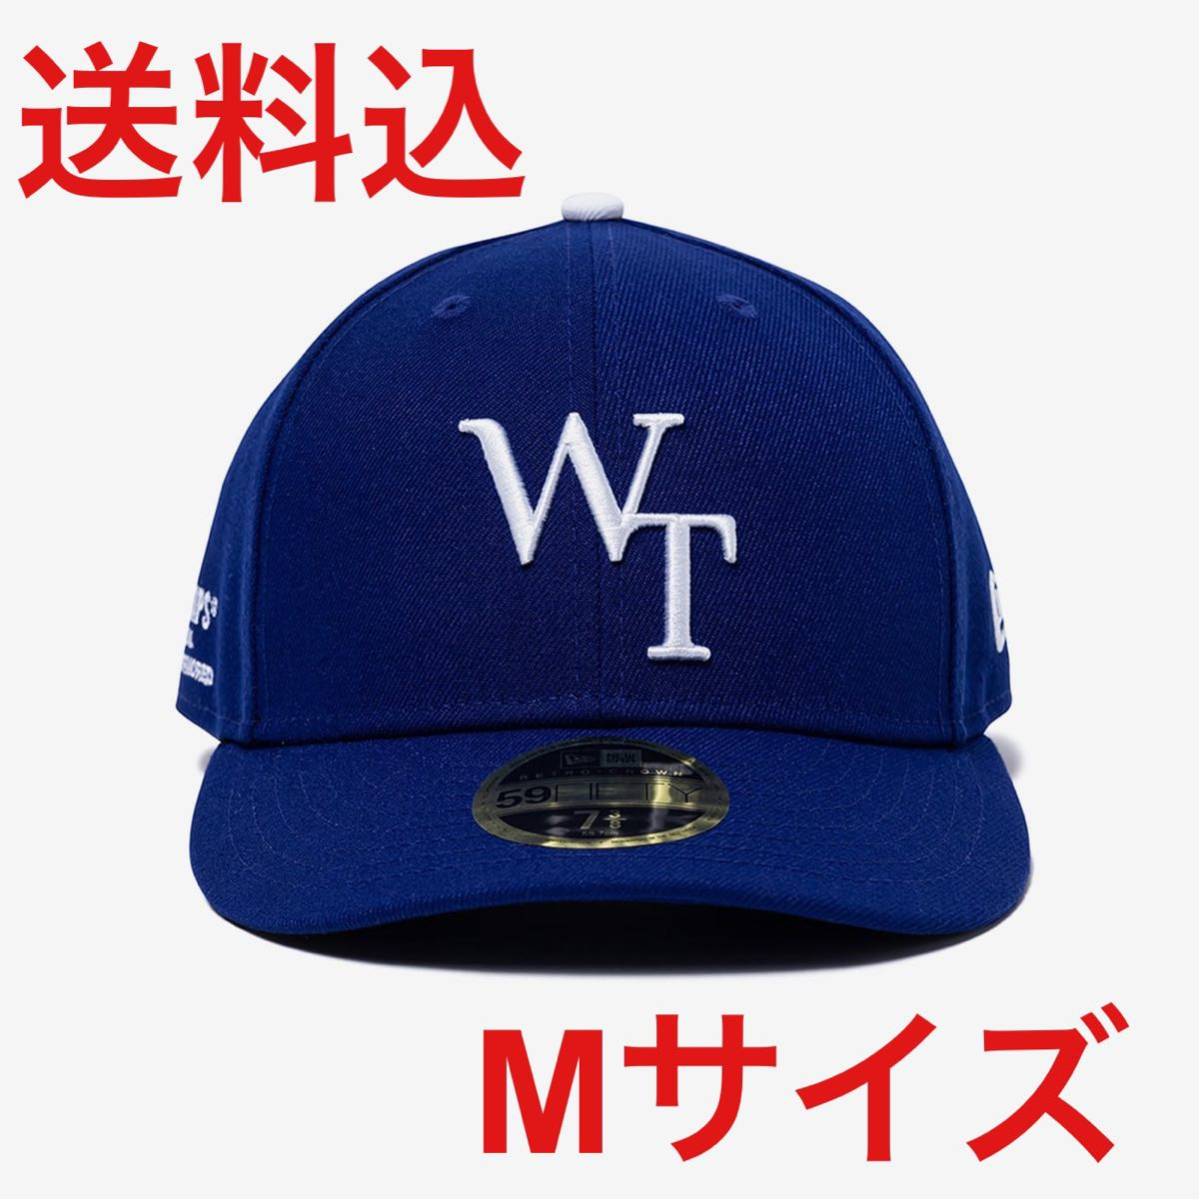 WTAPS NEW ERA 59FIFTY LOW PROFILE BLUE CAP Lサイズ 7-1/2 ダブル